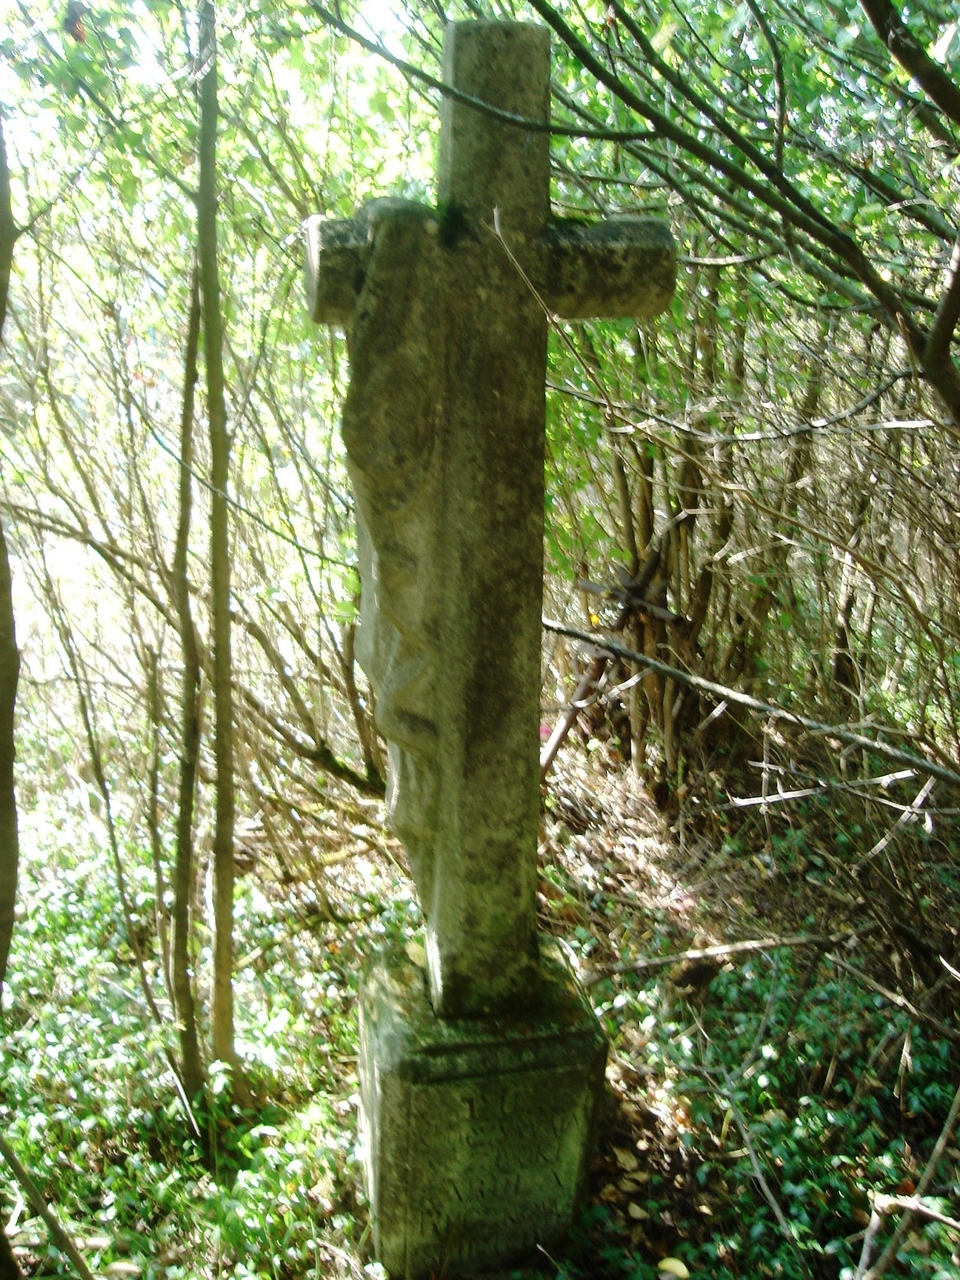 Tombstone of Karol Ruczkowski, Czerwonogród cemetery, state from 2005